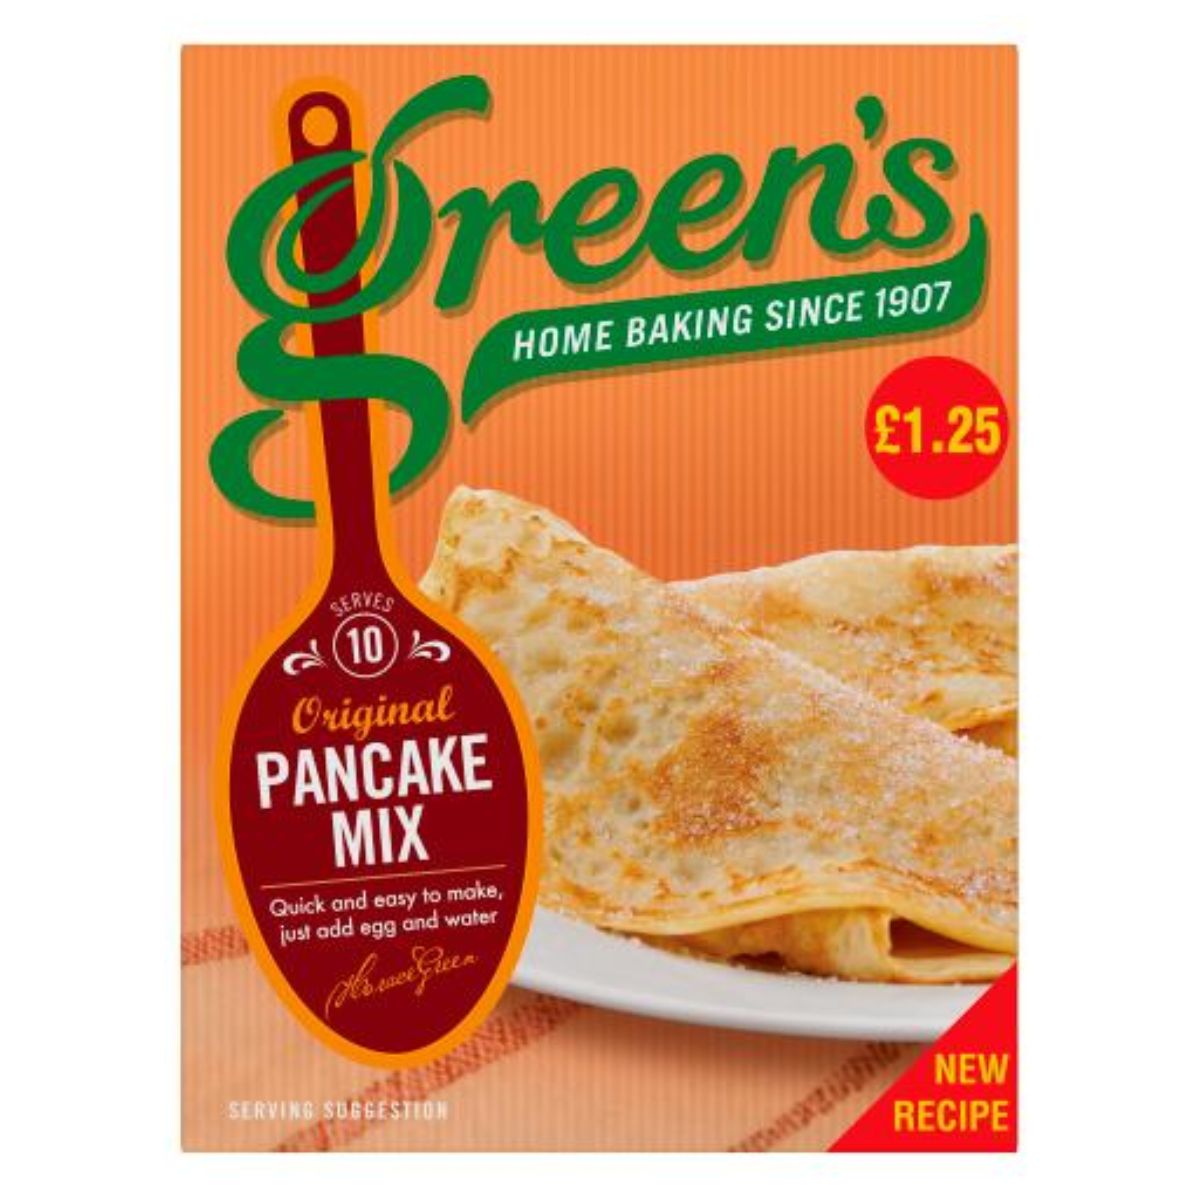 Green's Original Pancake Mix - 232g